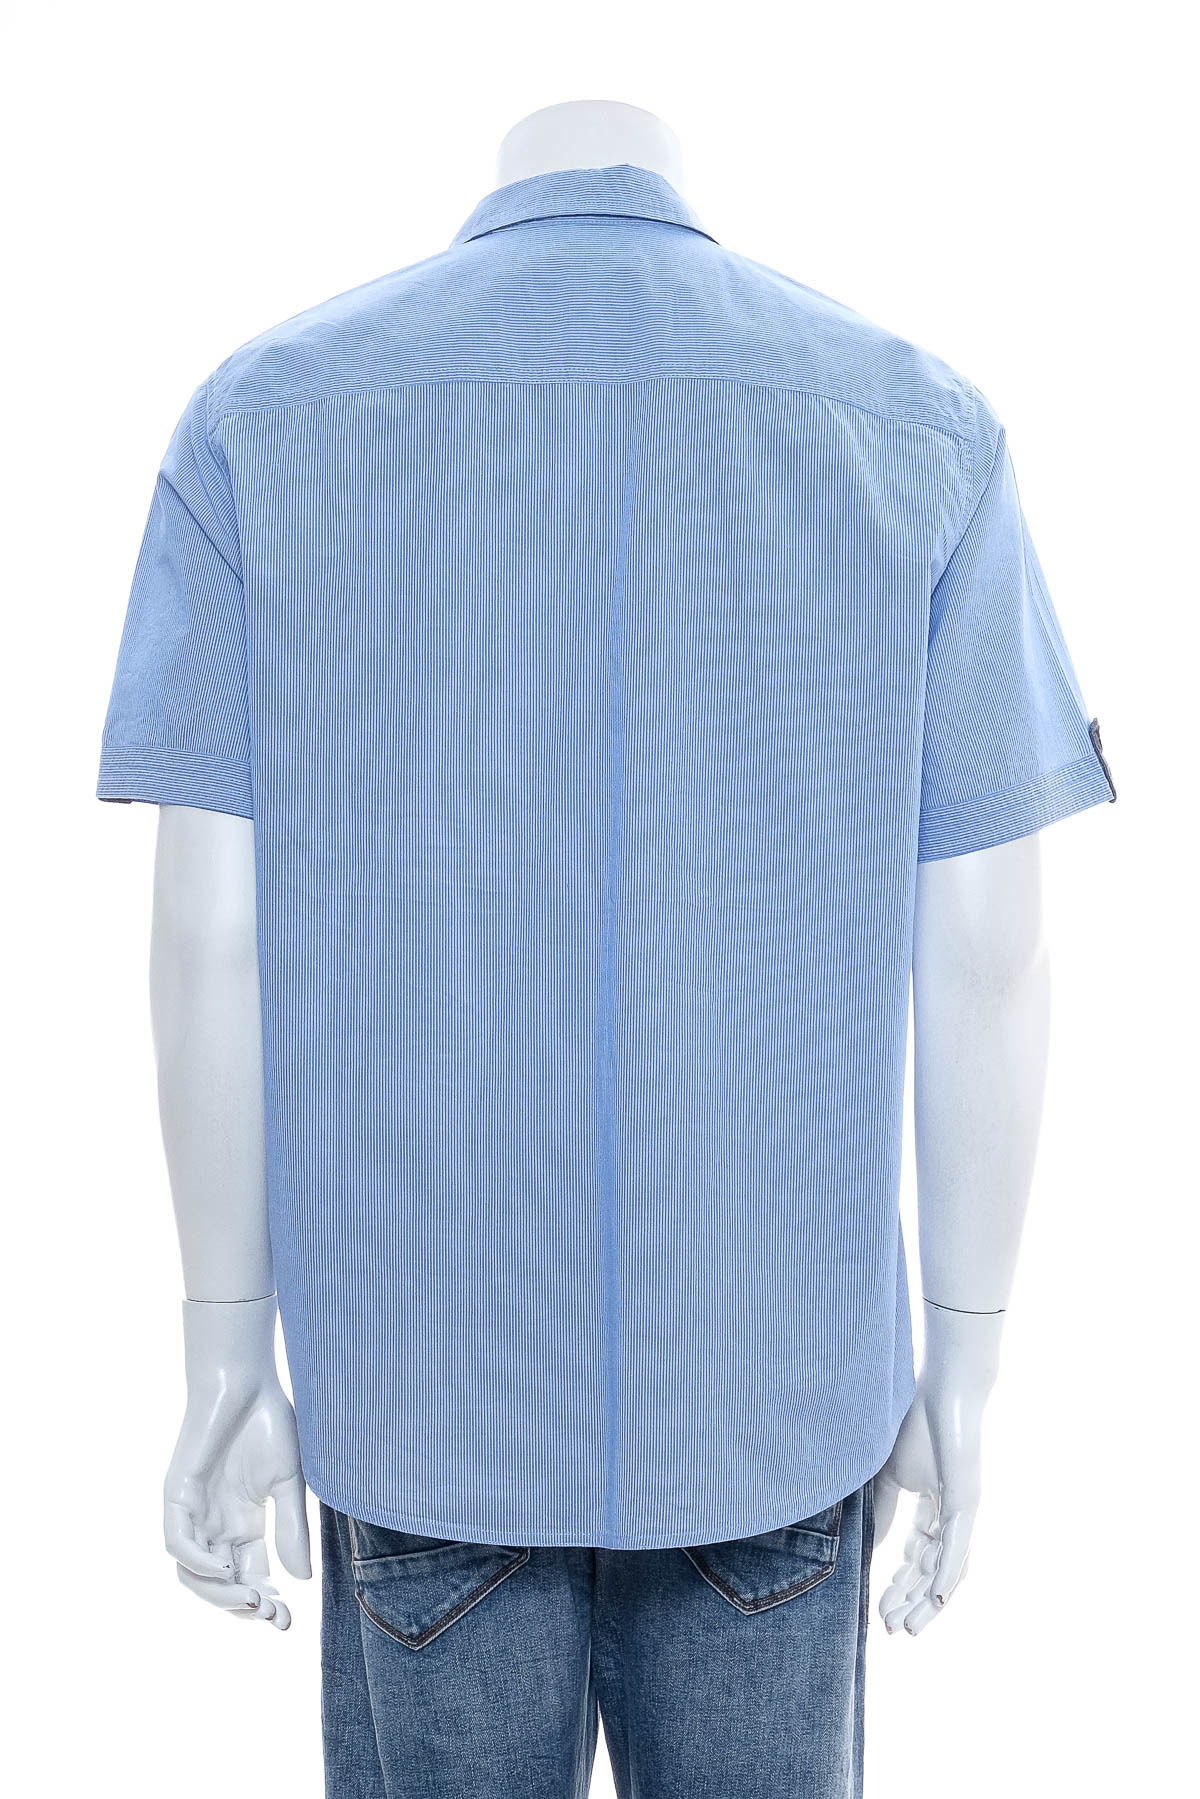 Ανδρικό πουκάμισο - Bpc Bonprix Collection - 1